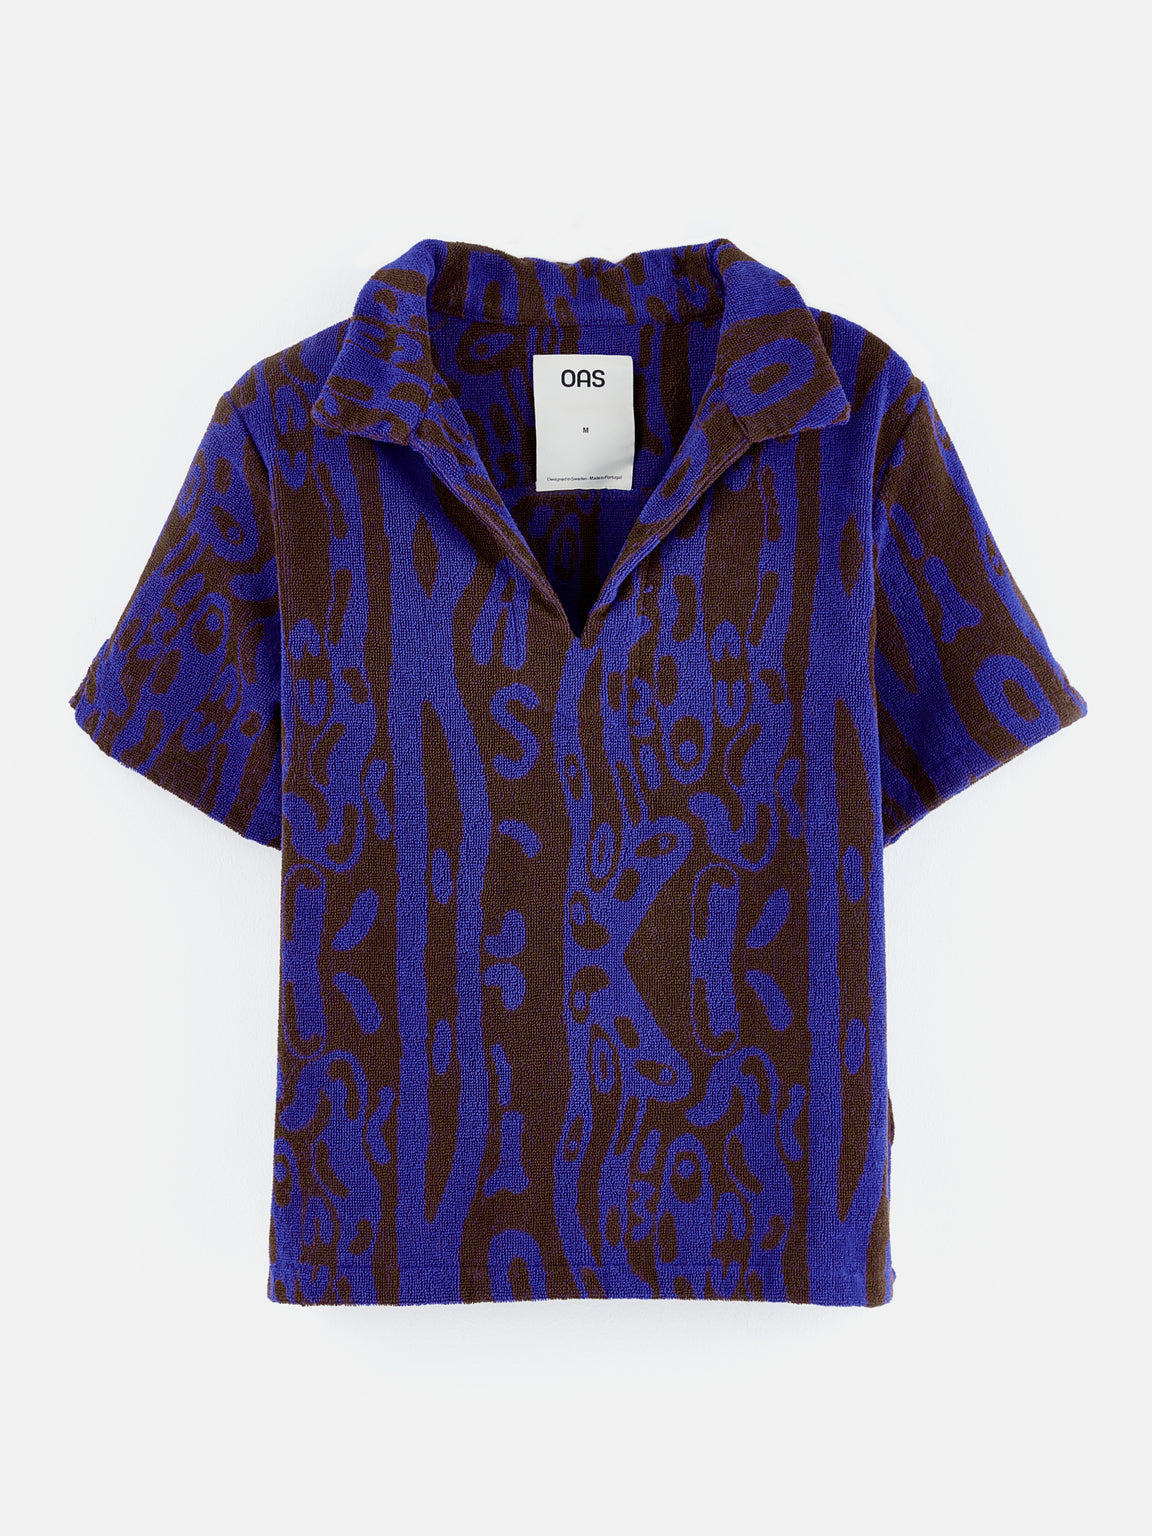 Oas | Thenards Jiggle Jaffa Terry Shirt | Bellerose E-shop